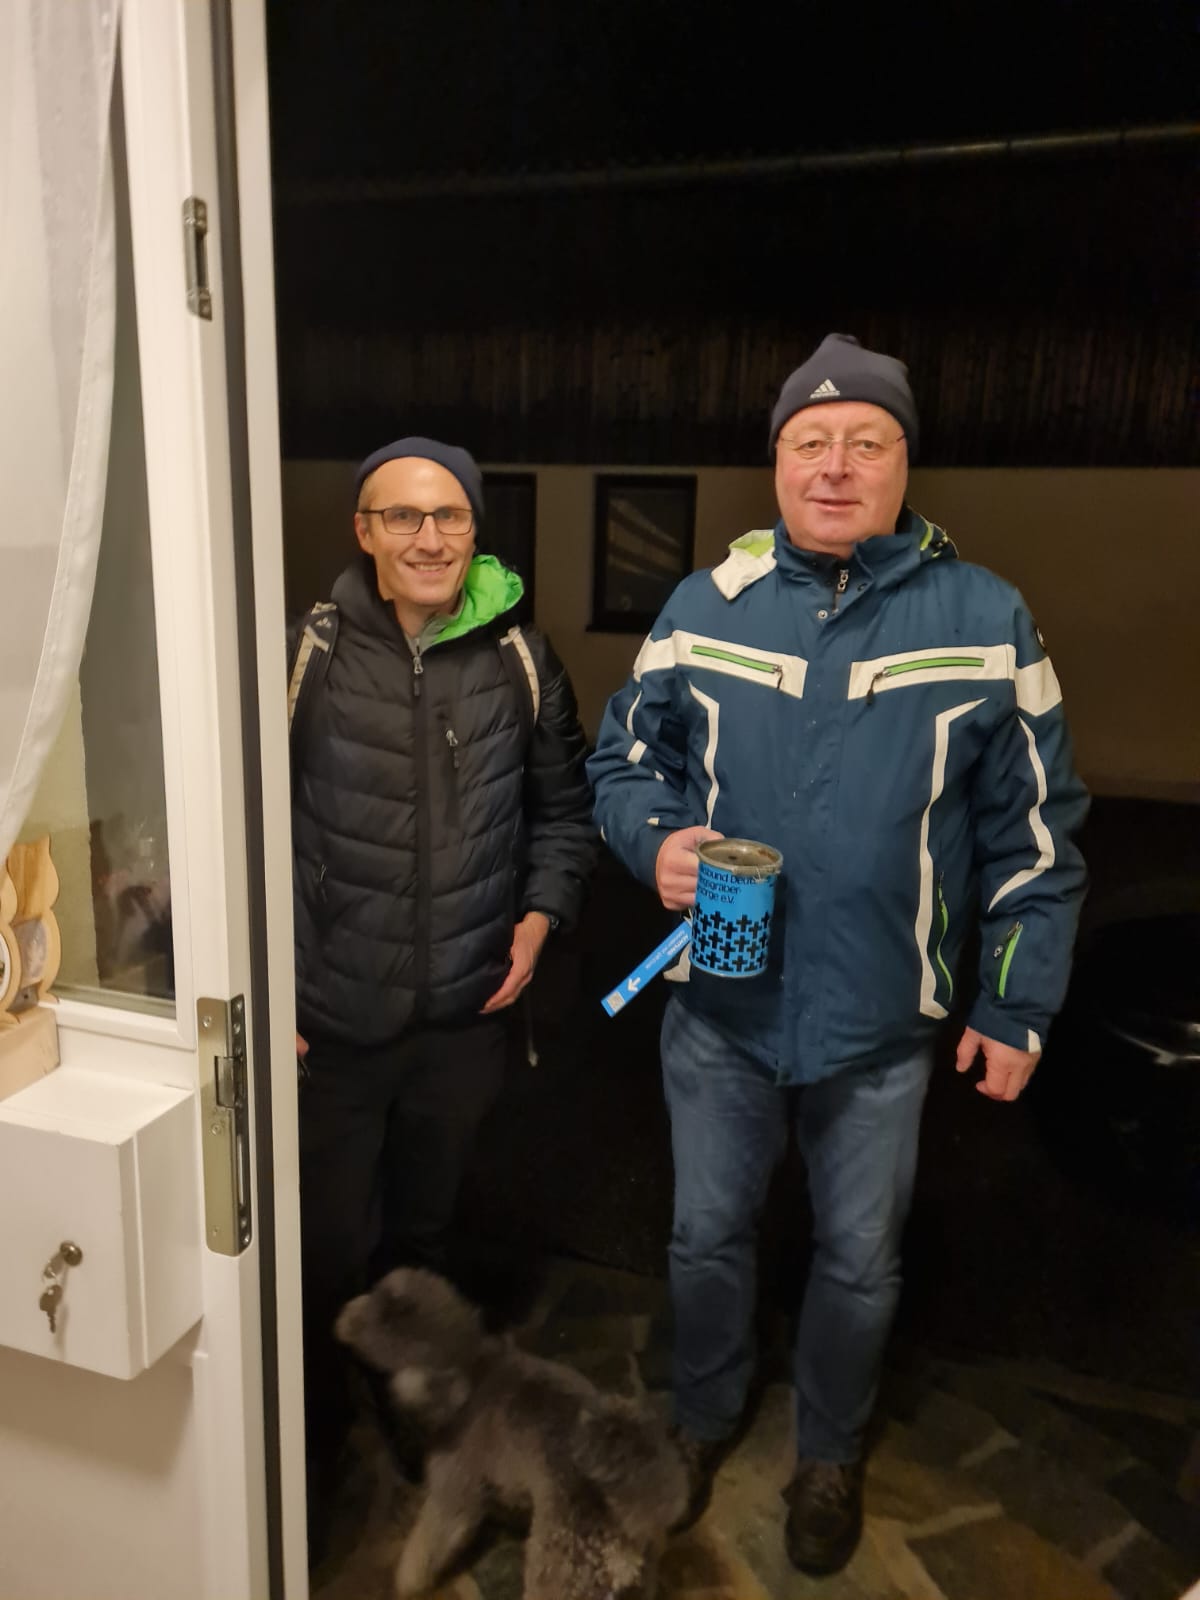 Manfred Meiser und Christophe Trag beim Sammeln an den Haustüren von Jagstheim